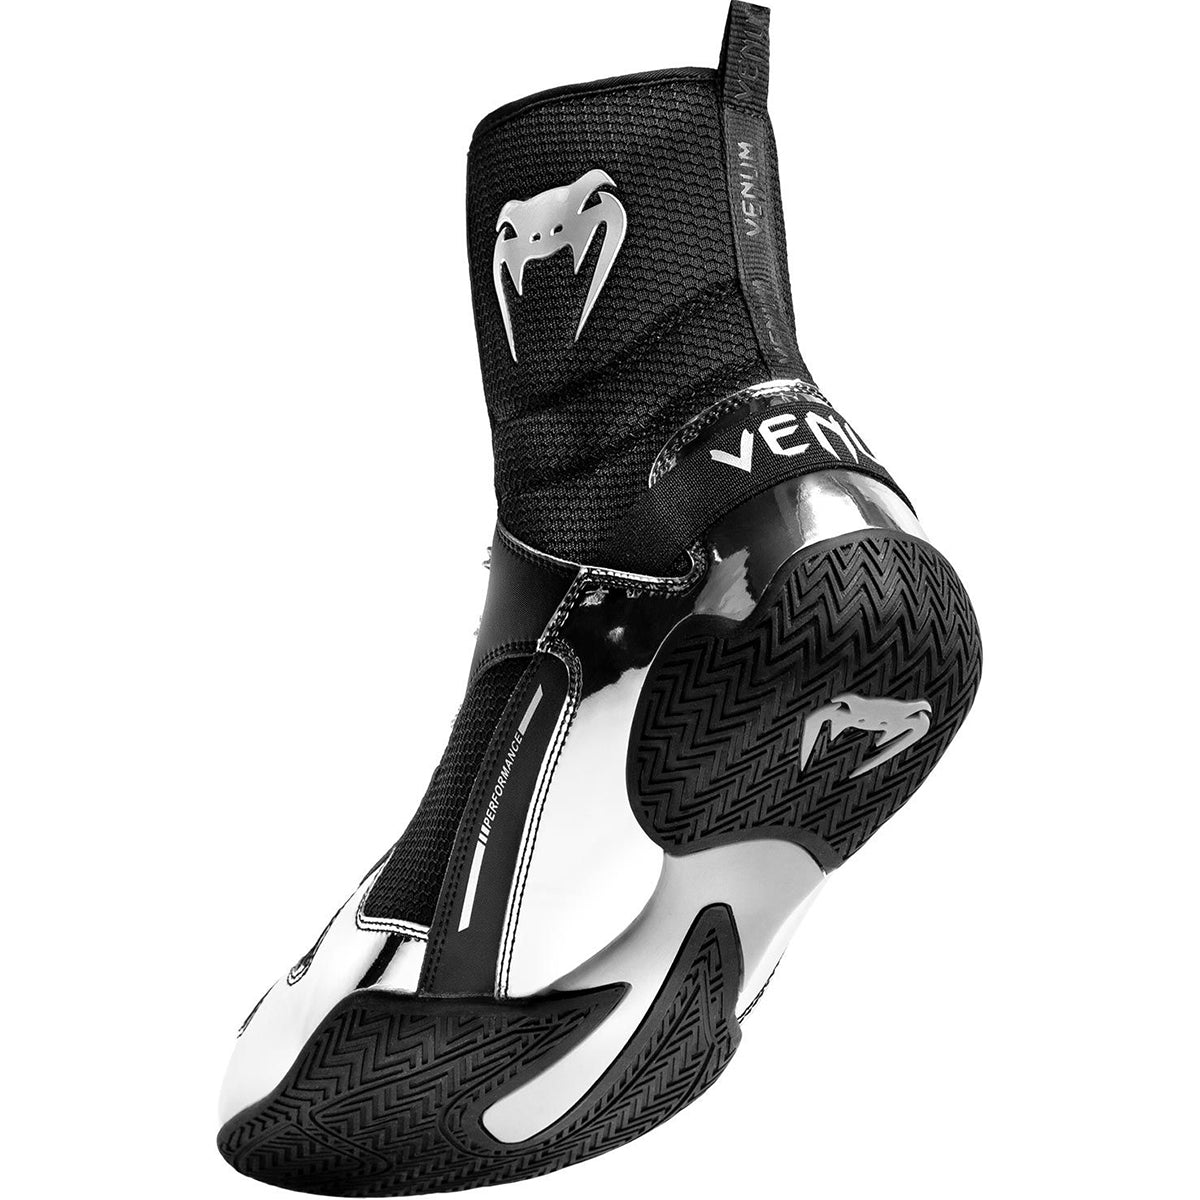 Venum Elite Professional Boxing Shoes - Black/Silver Venum